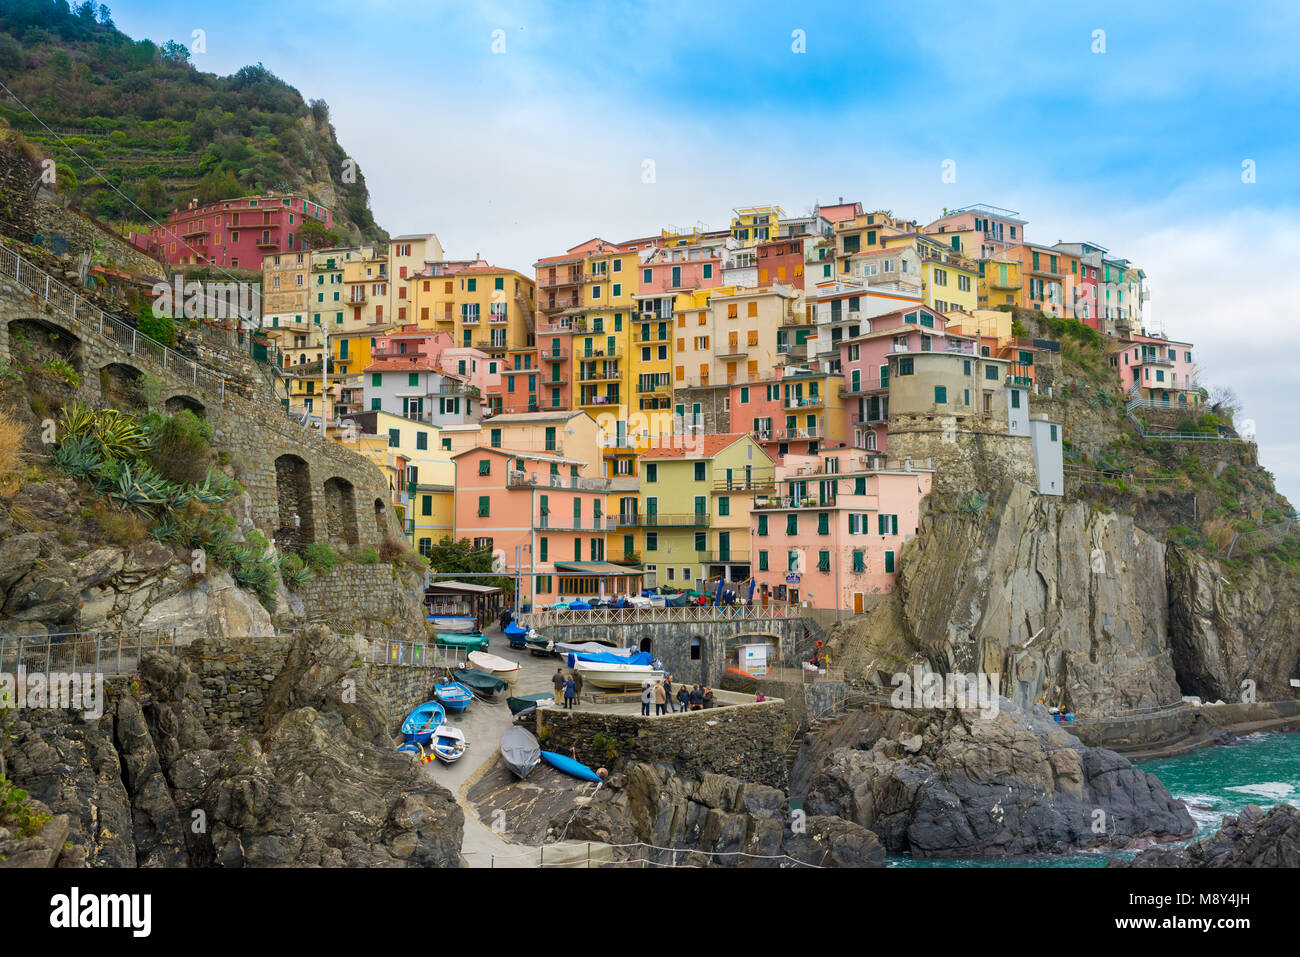 Die kleinen, traditionellen italienischen Dorf Manarola mit bunten Häusern heute ein beliebtes Reiseziel in Cinque Terre, Ligurien, Italien Stockfoto